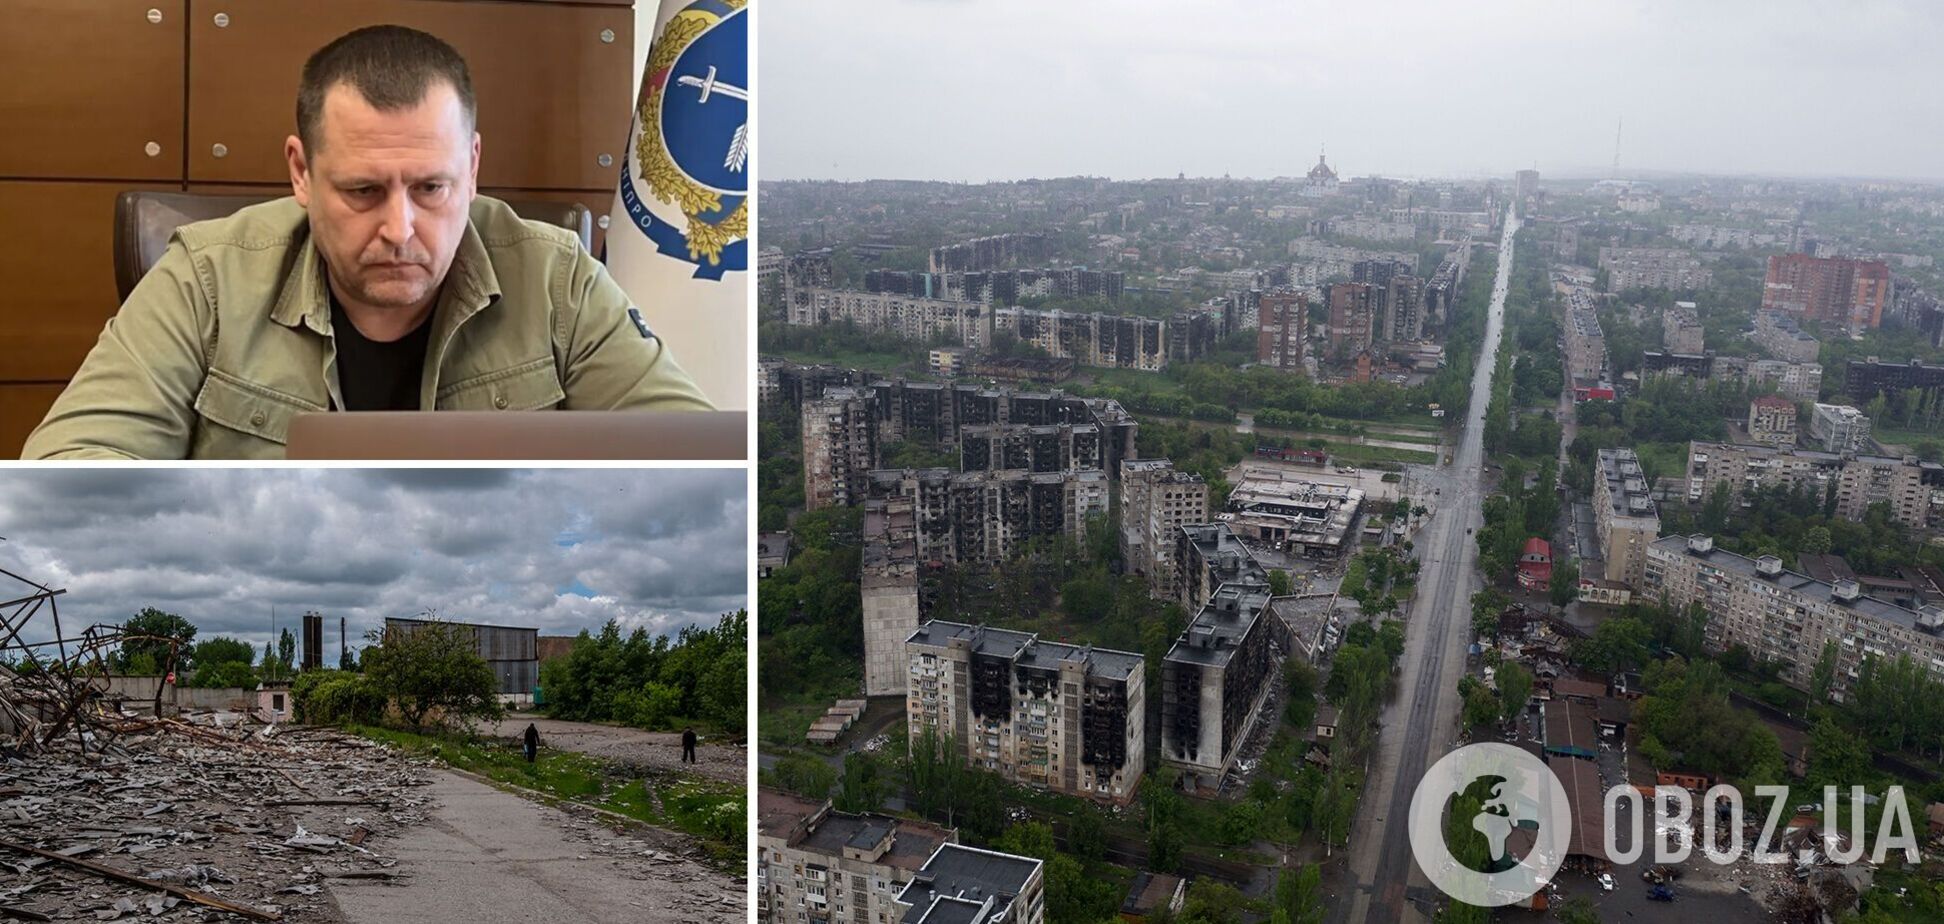 Филатов: орда вывозит дешевую рабсилу из Украины, города уничтожаются под ноль